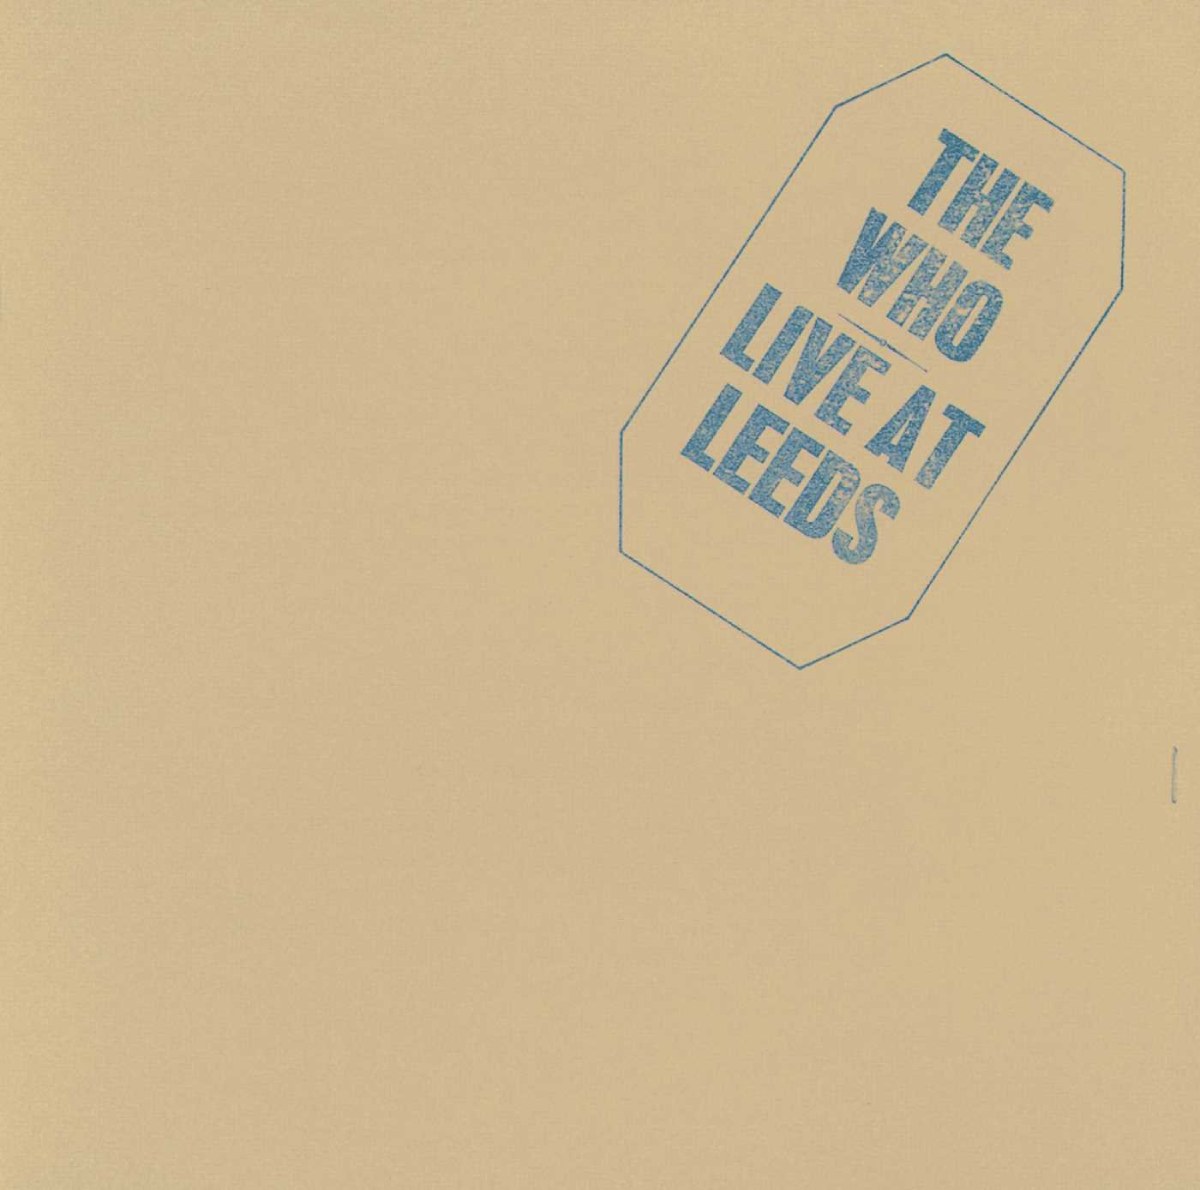 Os Quem - Vivem em Leeds (1970)